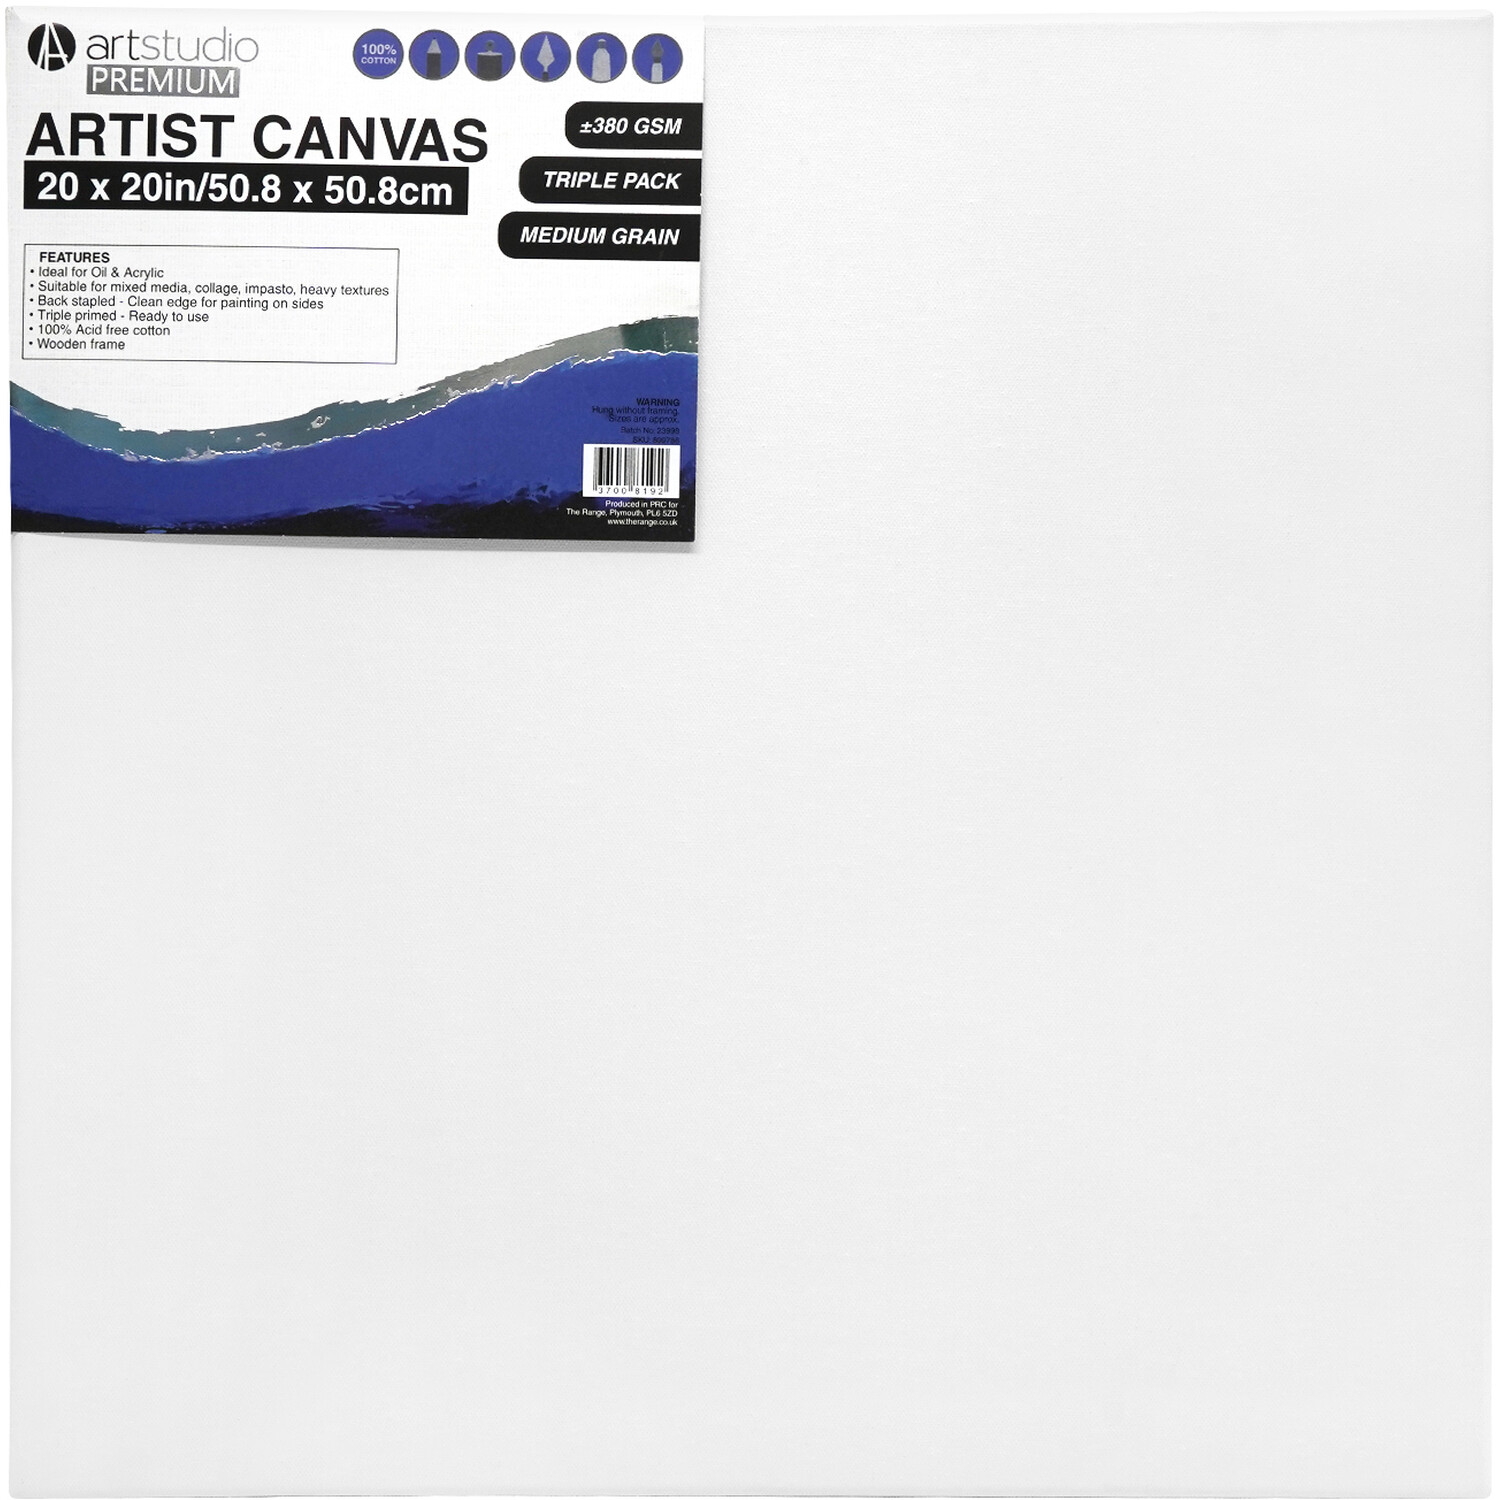 Art Studio Premium Artist Canvas 50.8 x 50.8cm 3 Pack Image 1